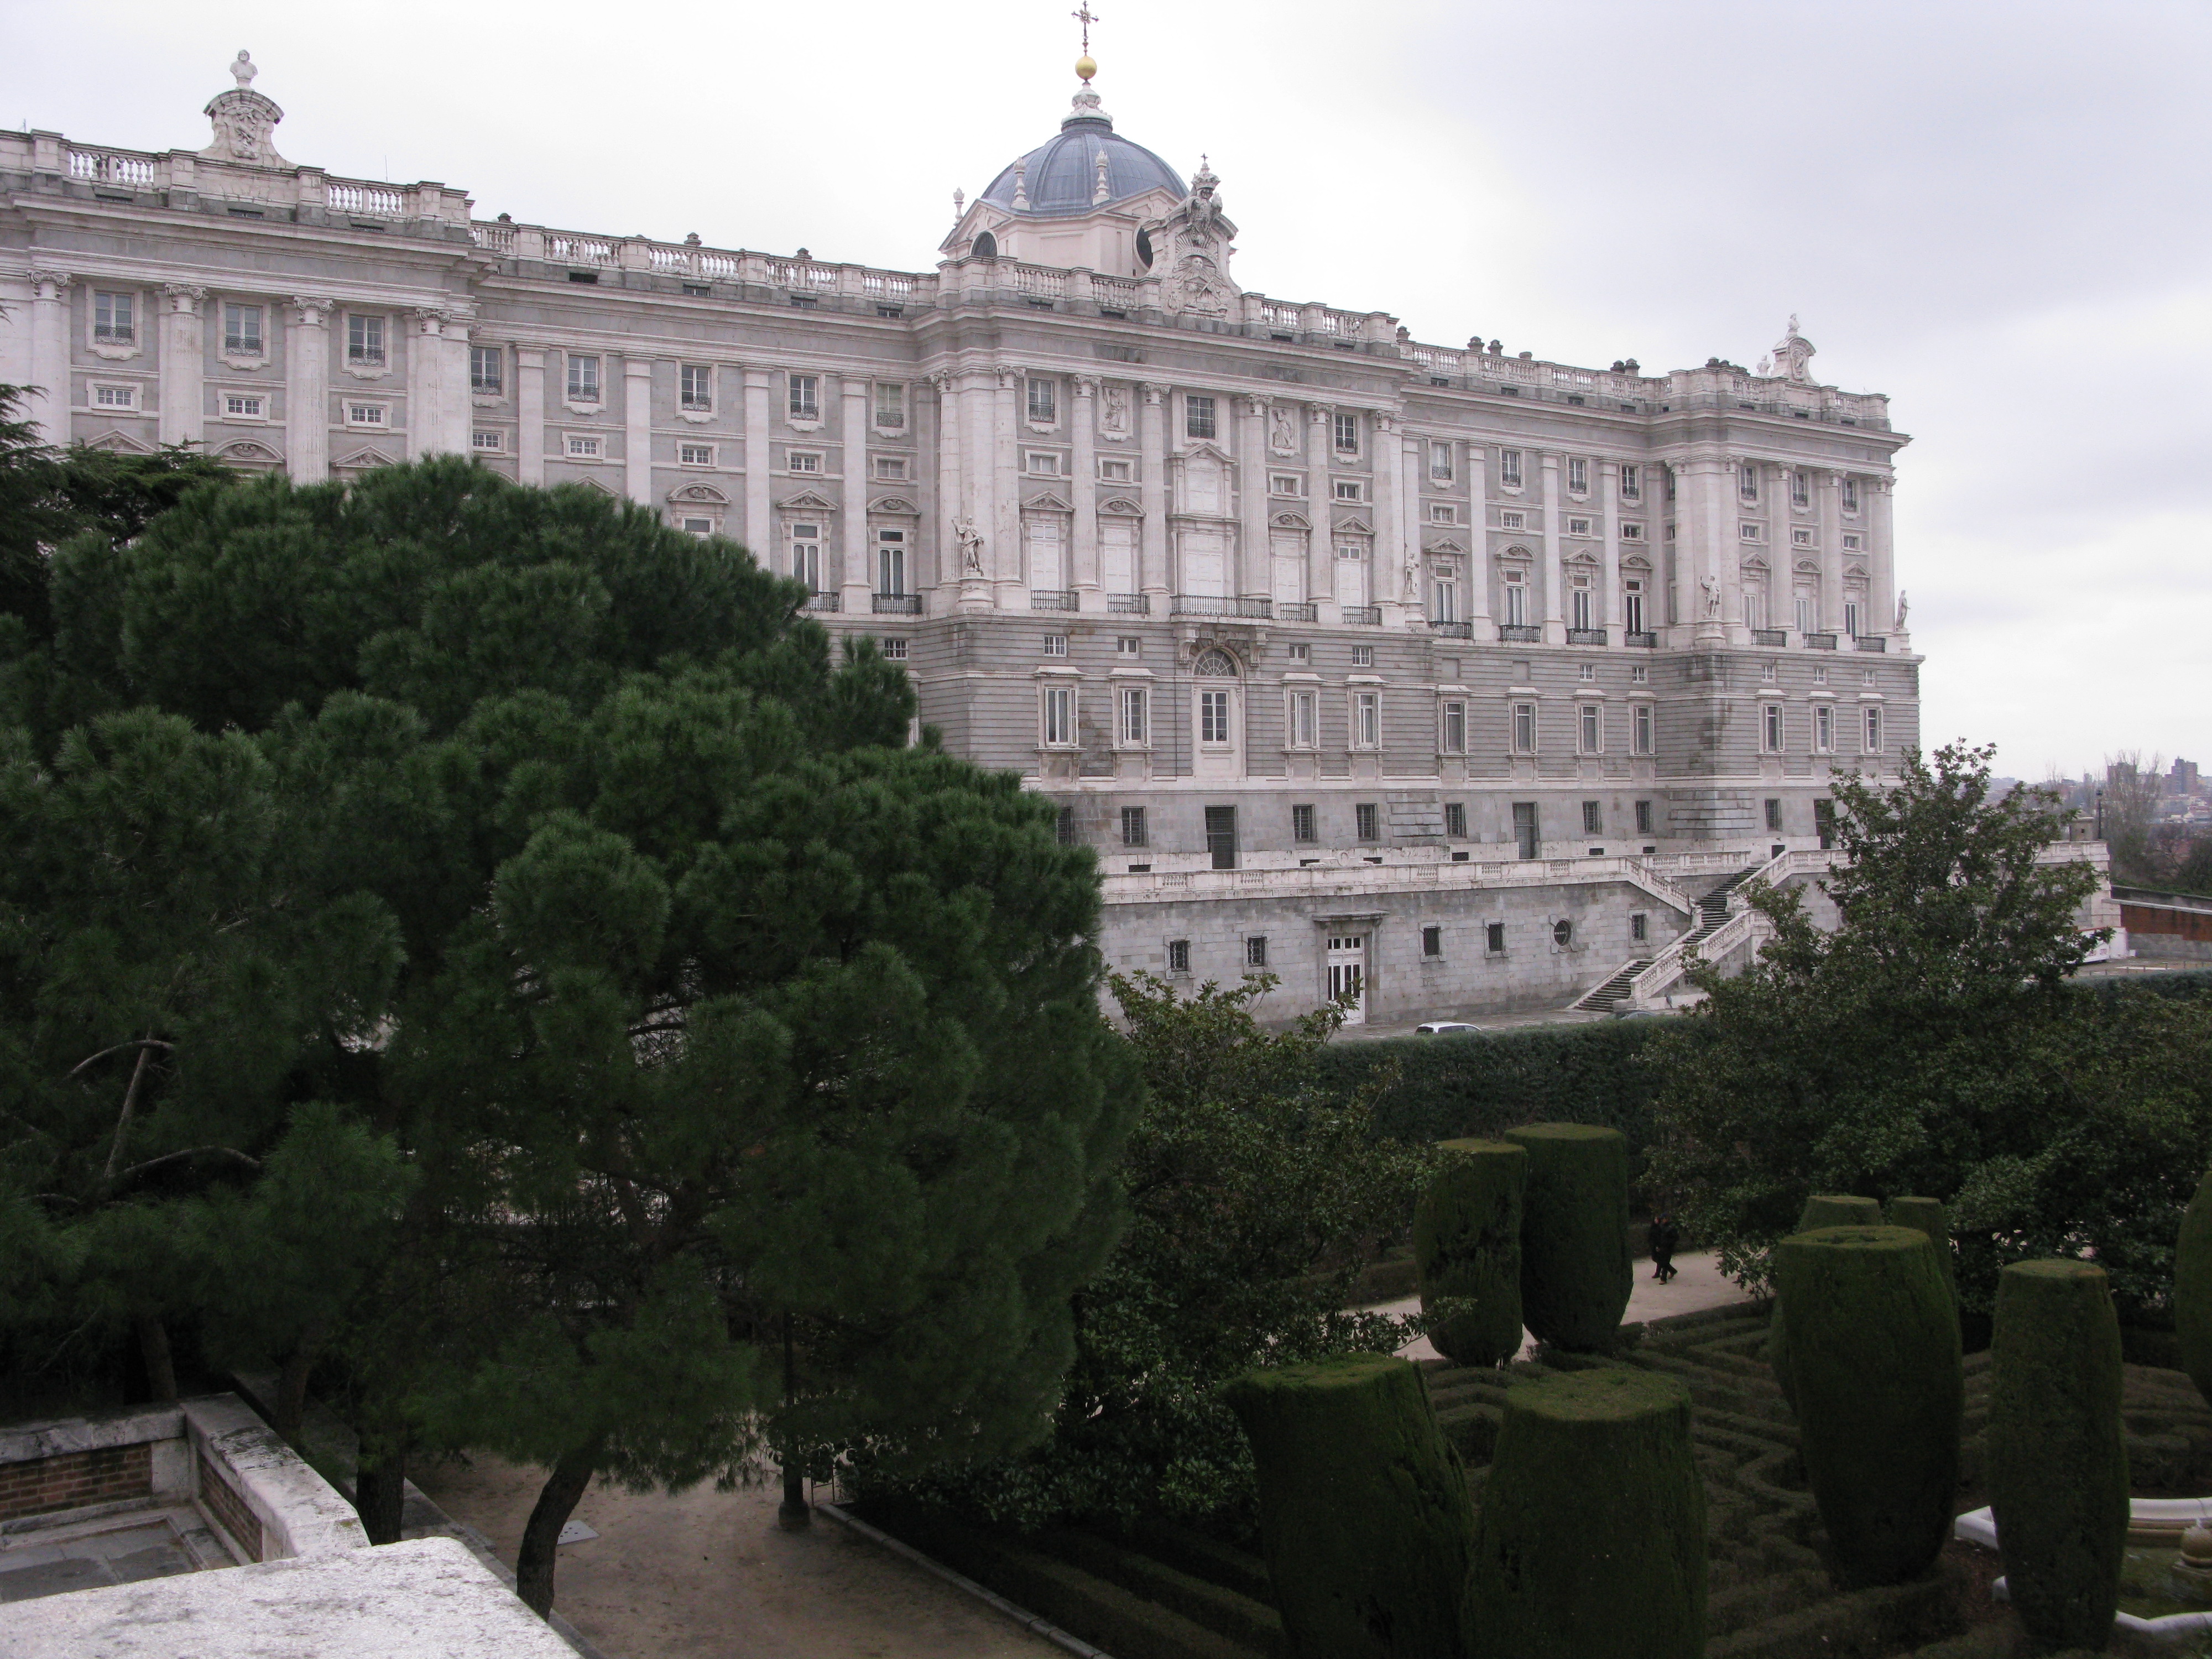 MADRID, CAPITAL OF SPAIN